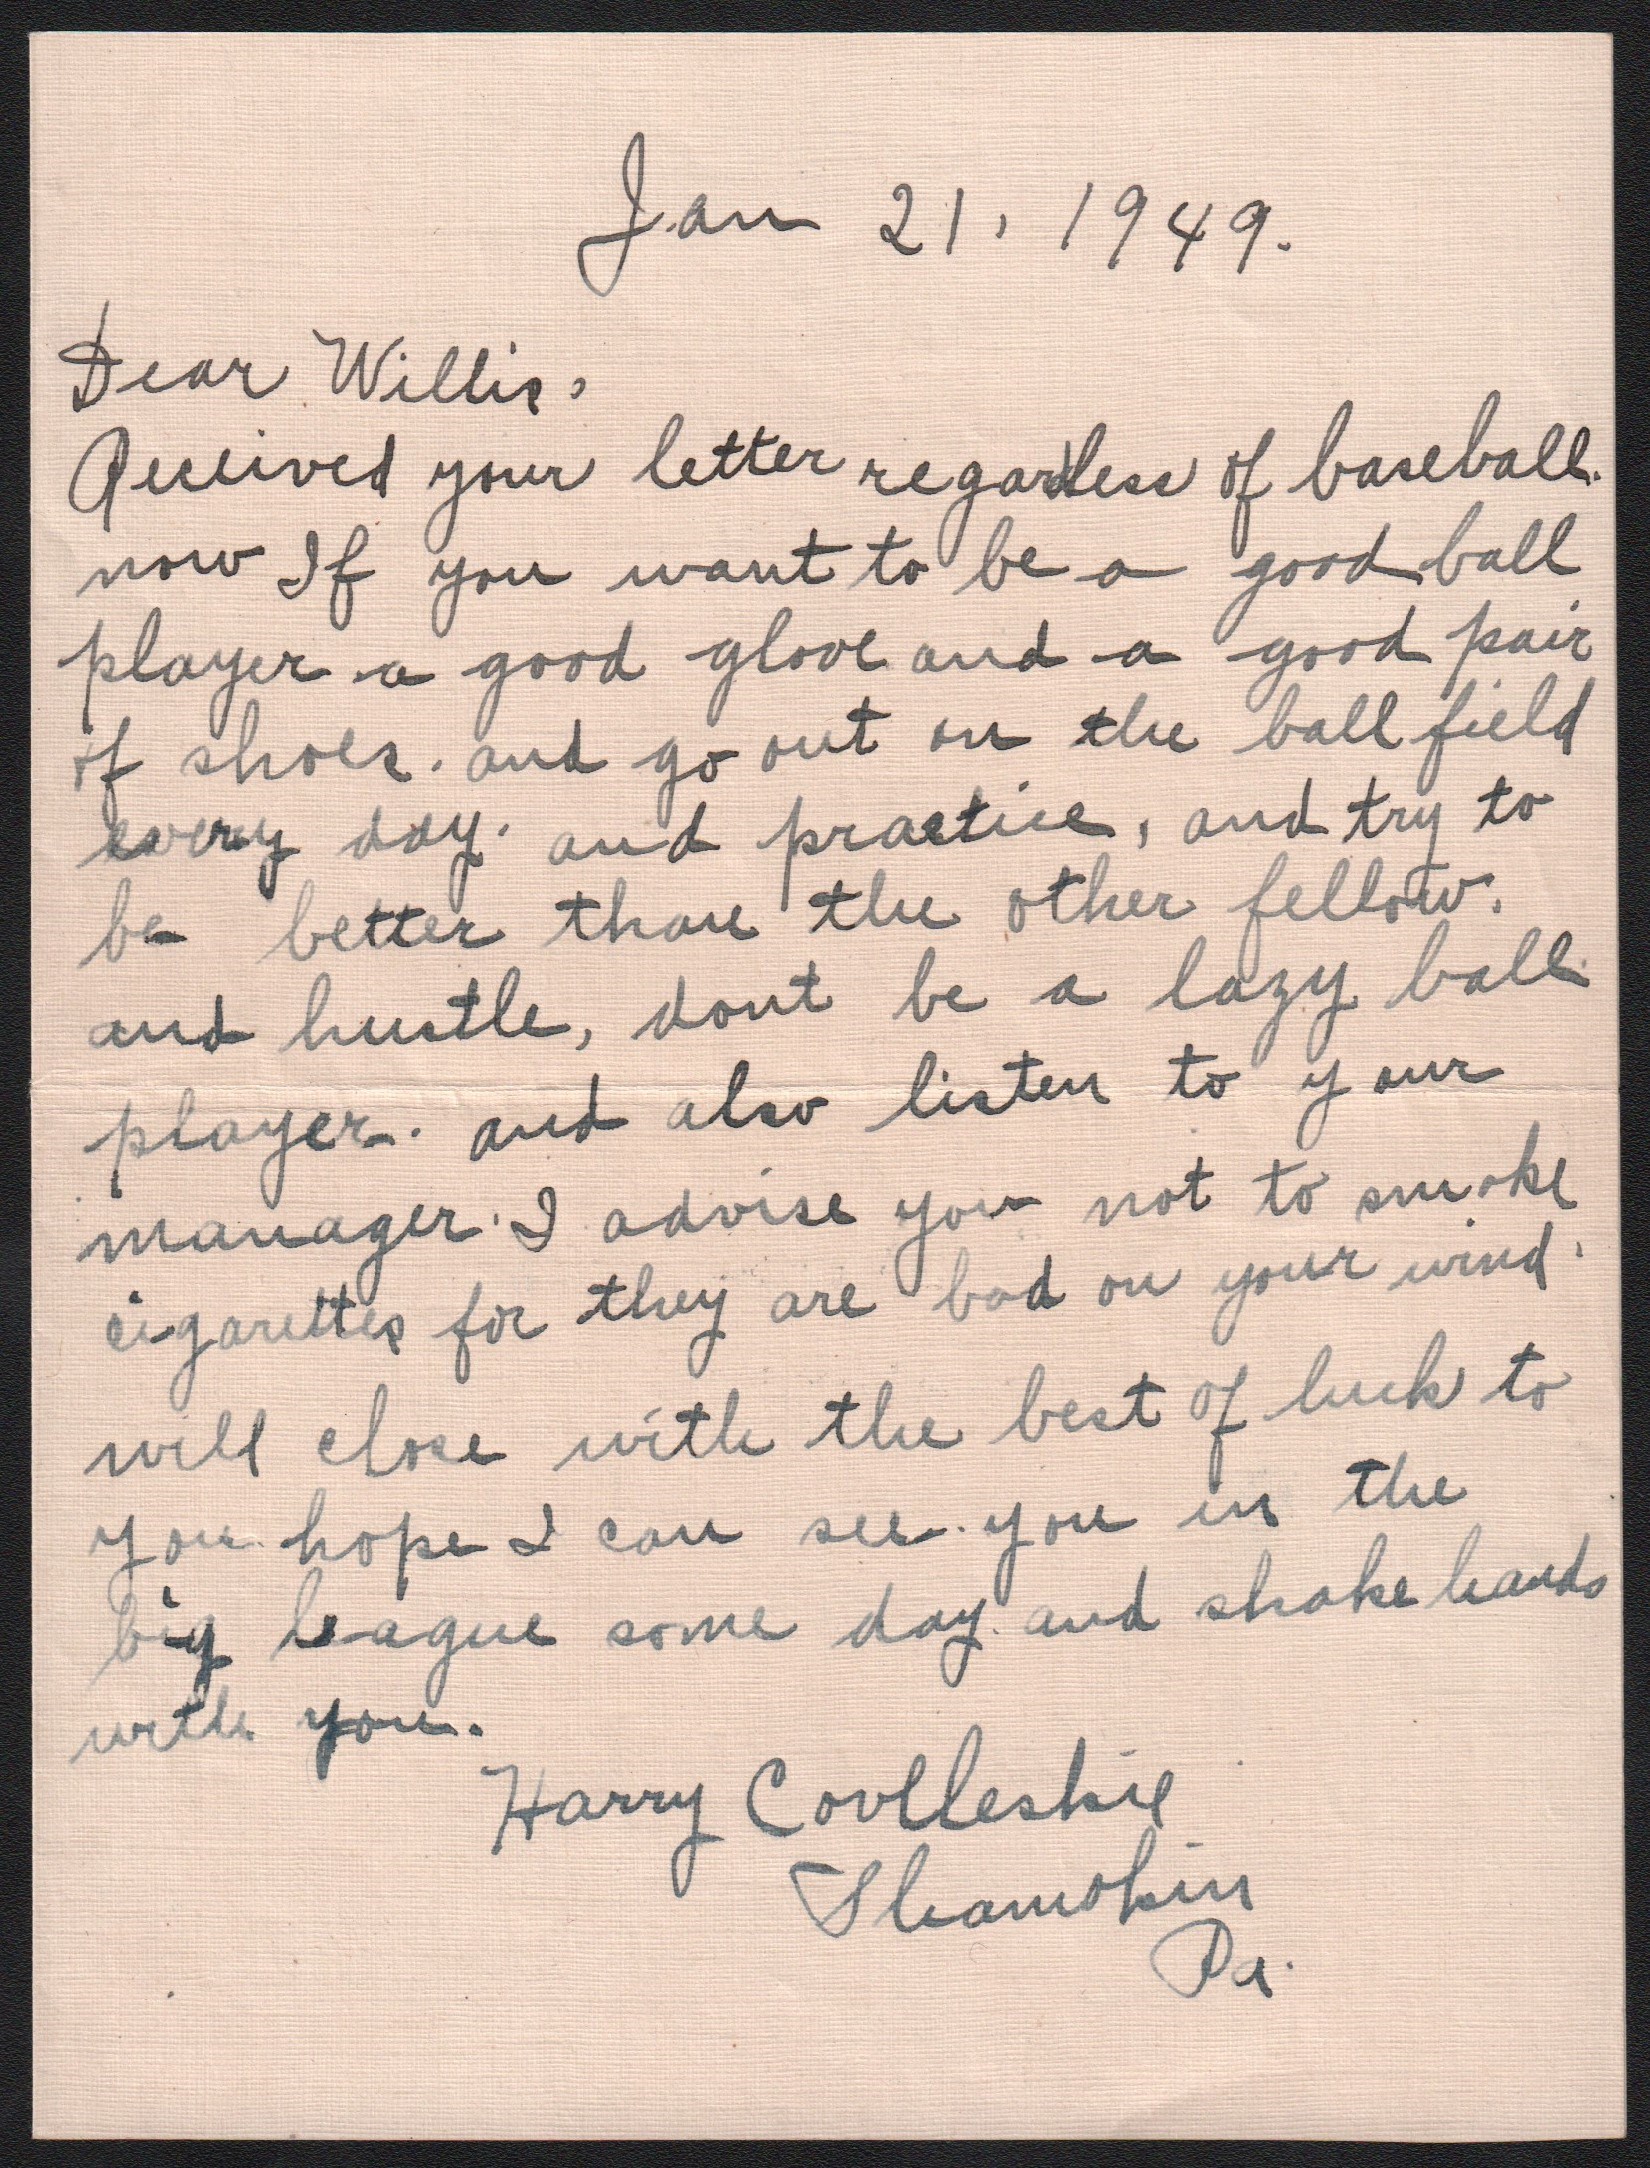 - 1949 Harry Coveleski Handwritten Letter - Dangers of Smoking & Baseball